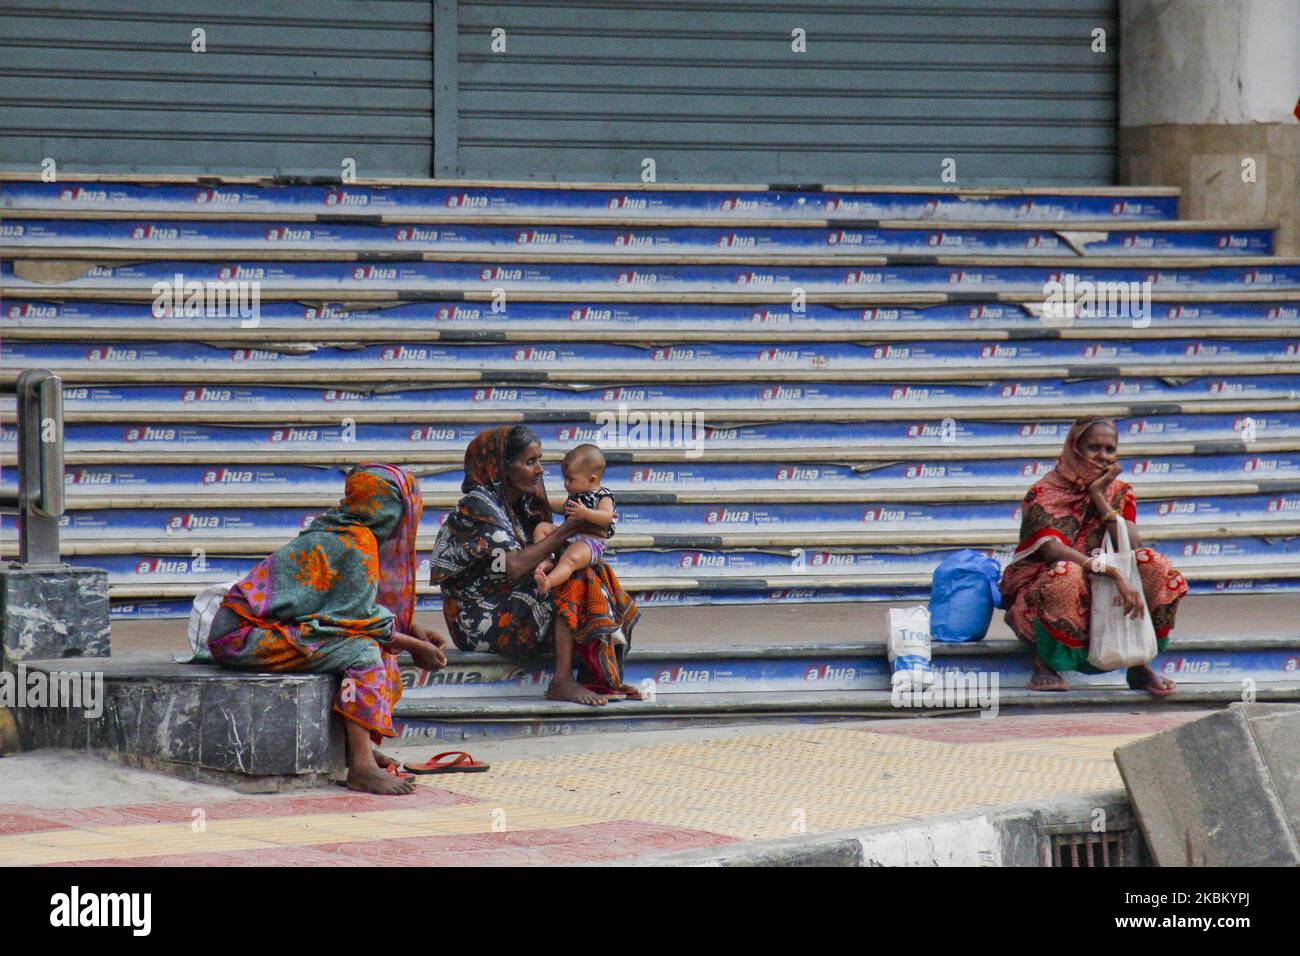 Persone di classe economica bassa in attesa di soccorsi a fianco della strada, a causa della minaccia del virus corona, le persone rimangono a casa e il livello di posti di lavoro dispari fino a zero, anche i bambini sono sulla strada per raccogliere cibo al 03 aprile a Dhaka, in Bangladesh. (Foto di Khandaker Azizur Rahman Sumon/NurPhoto) Foto Stock